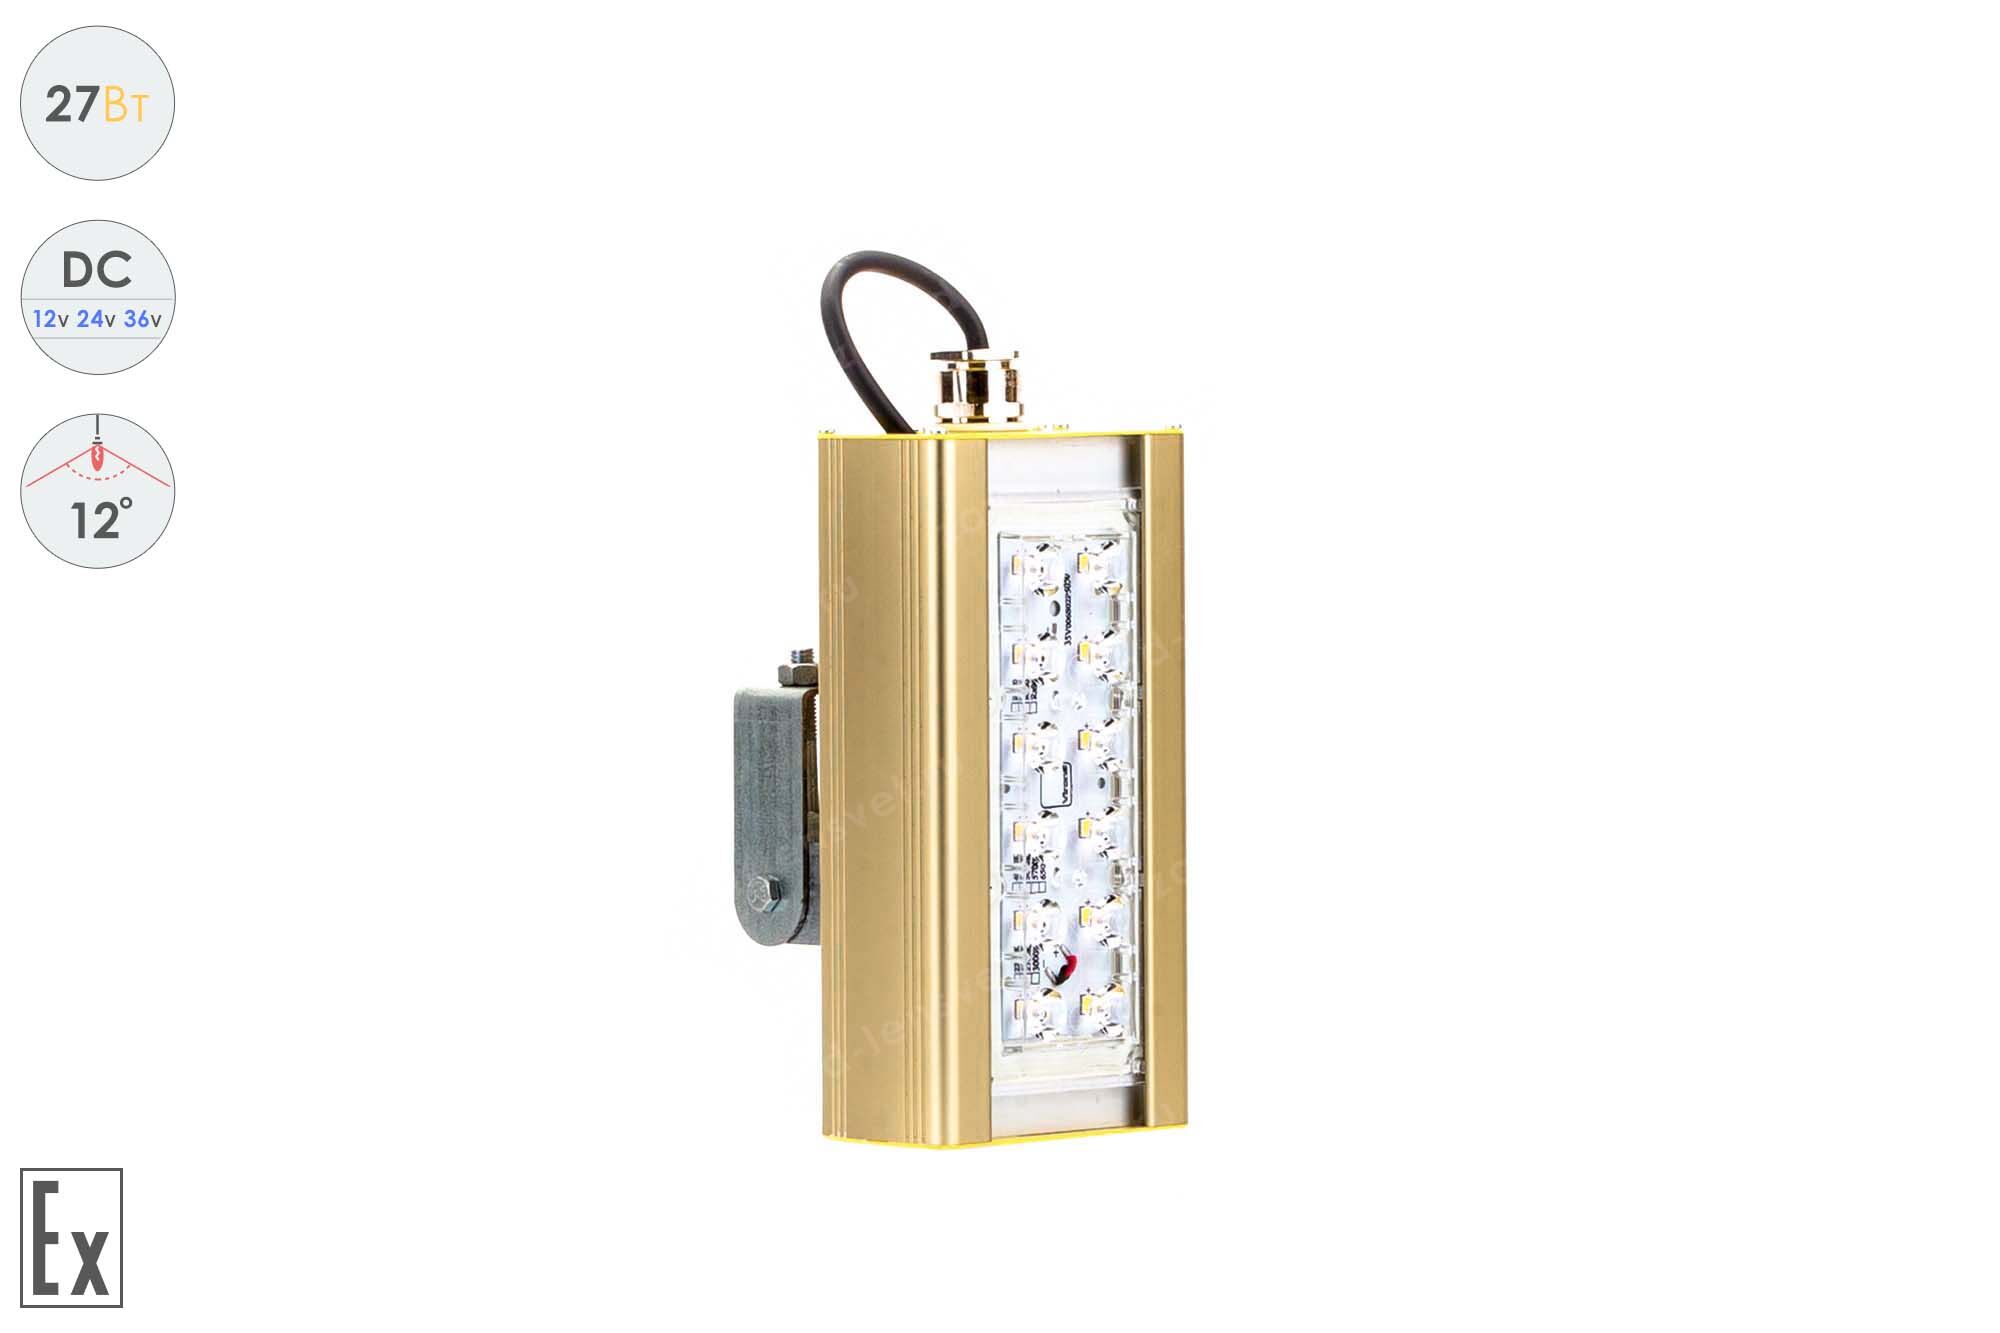 Светодиодный светильник Низковольтный Прожектор Взрывозащищенный GOLD, универсальный U-1, 27 Вт, 12°